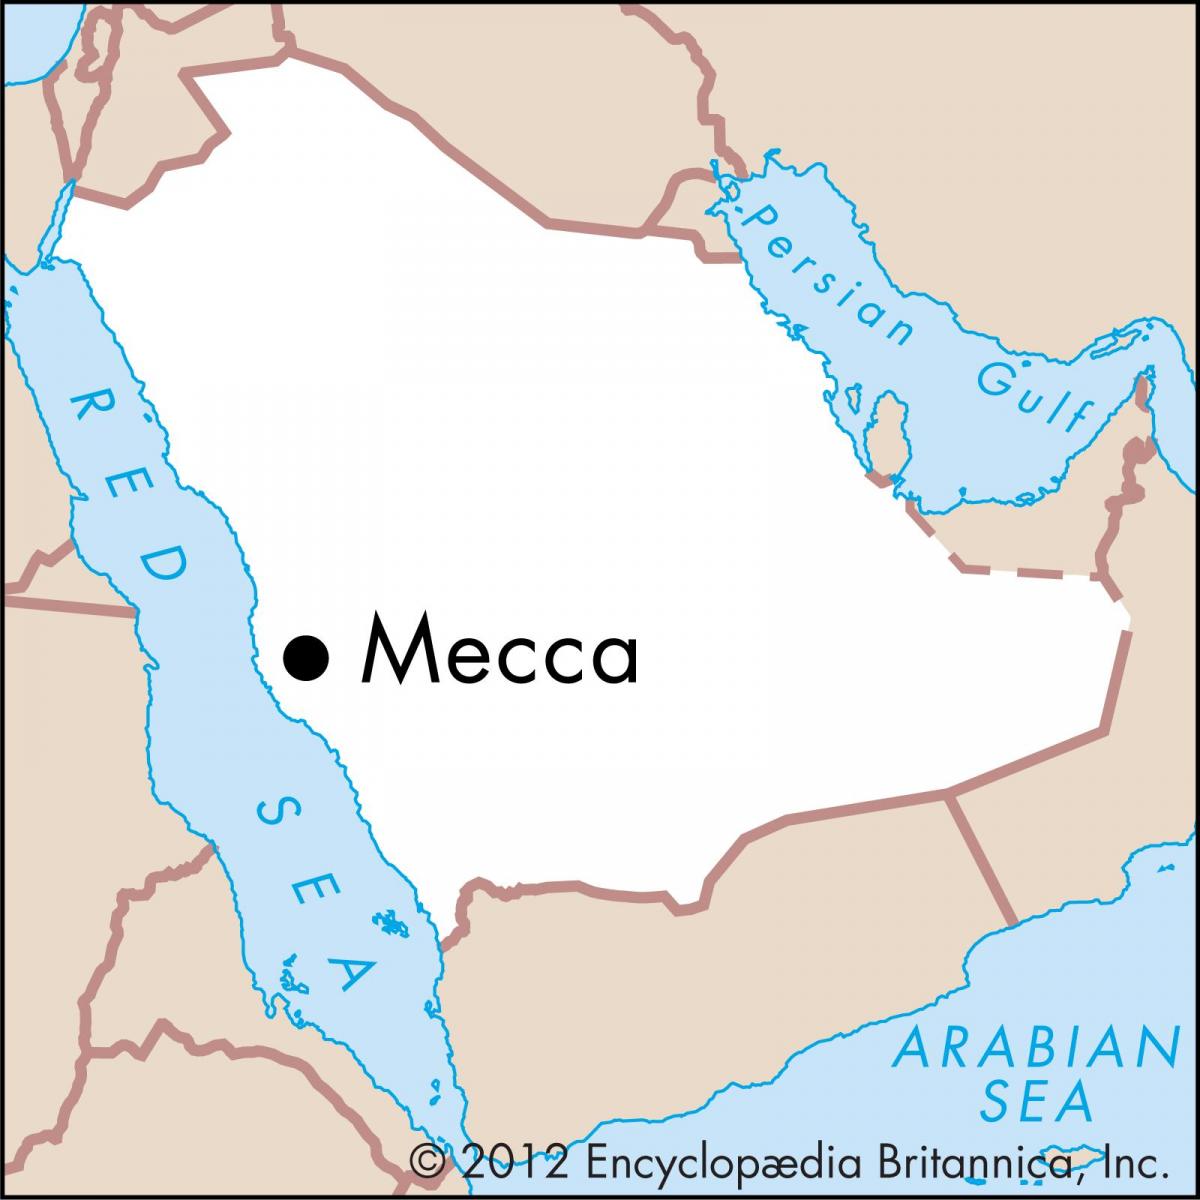 რუკა masarat სამეფო 3 Makkah